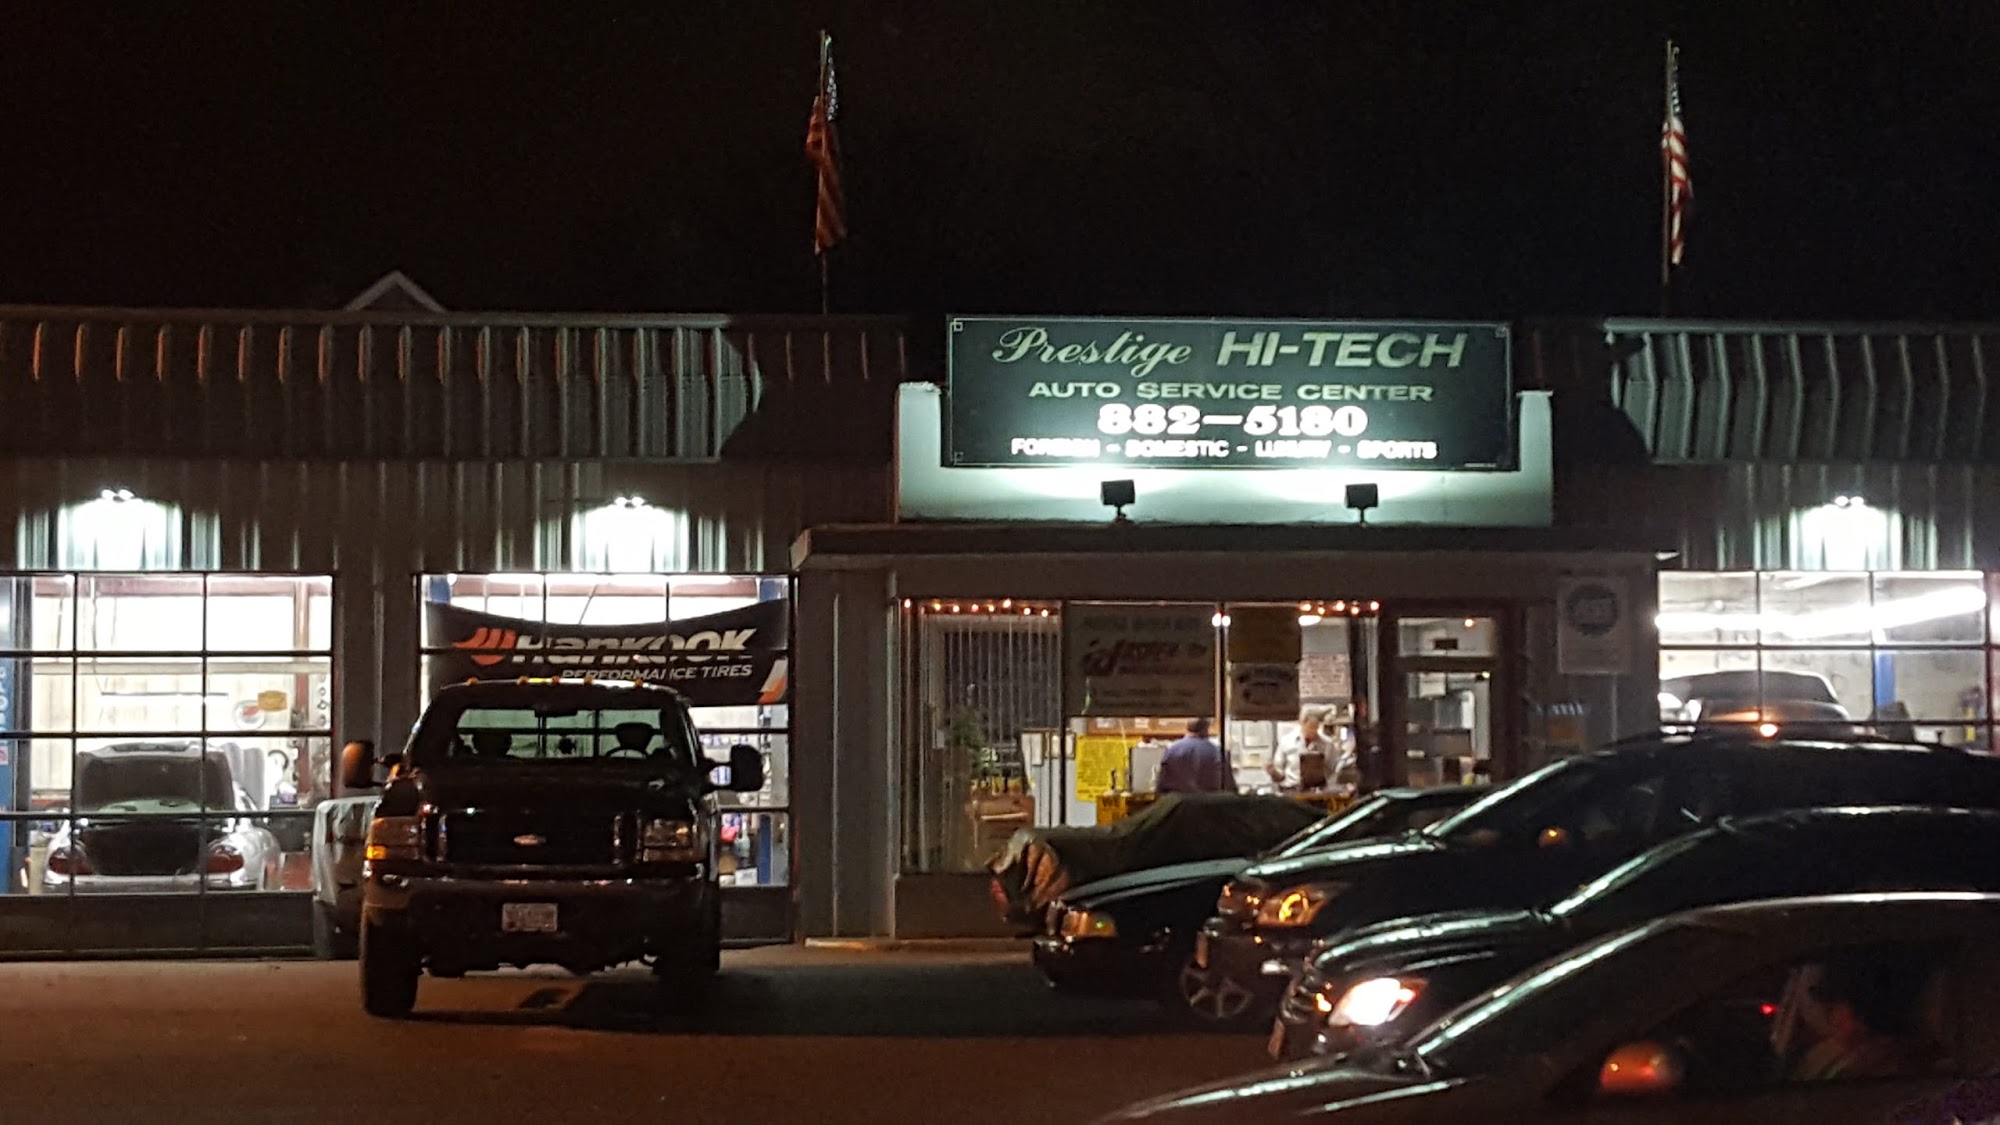 Prestige Hi Tech Auto Services Center